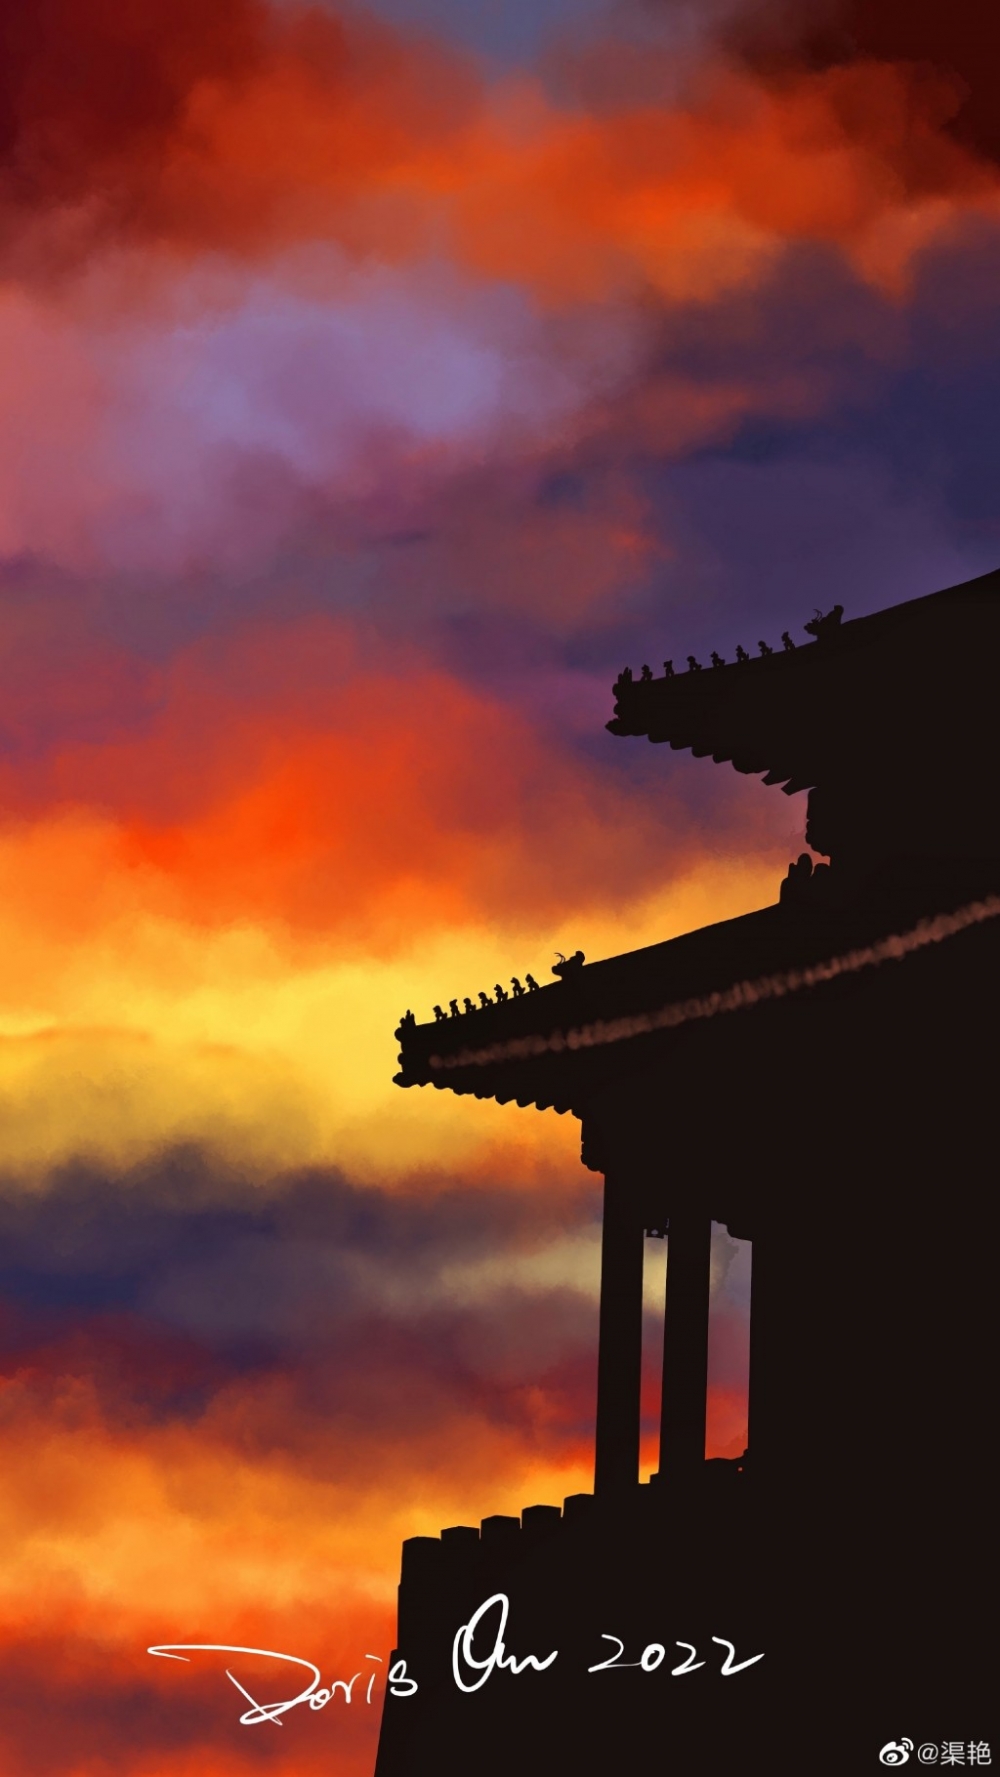 北京故宫九宫格上的手绘唯美图案图片